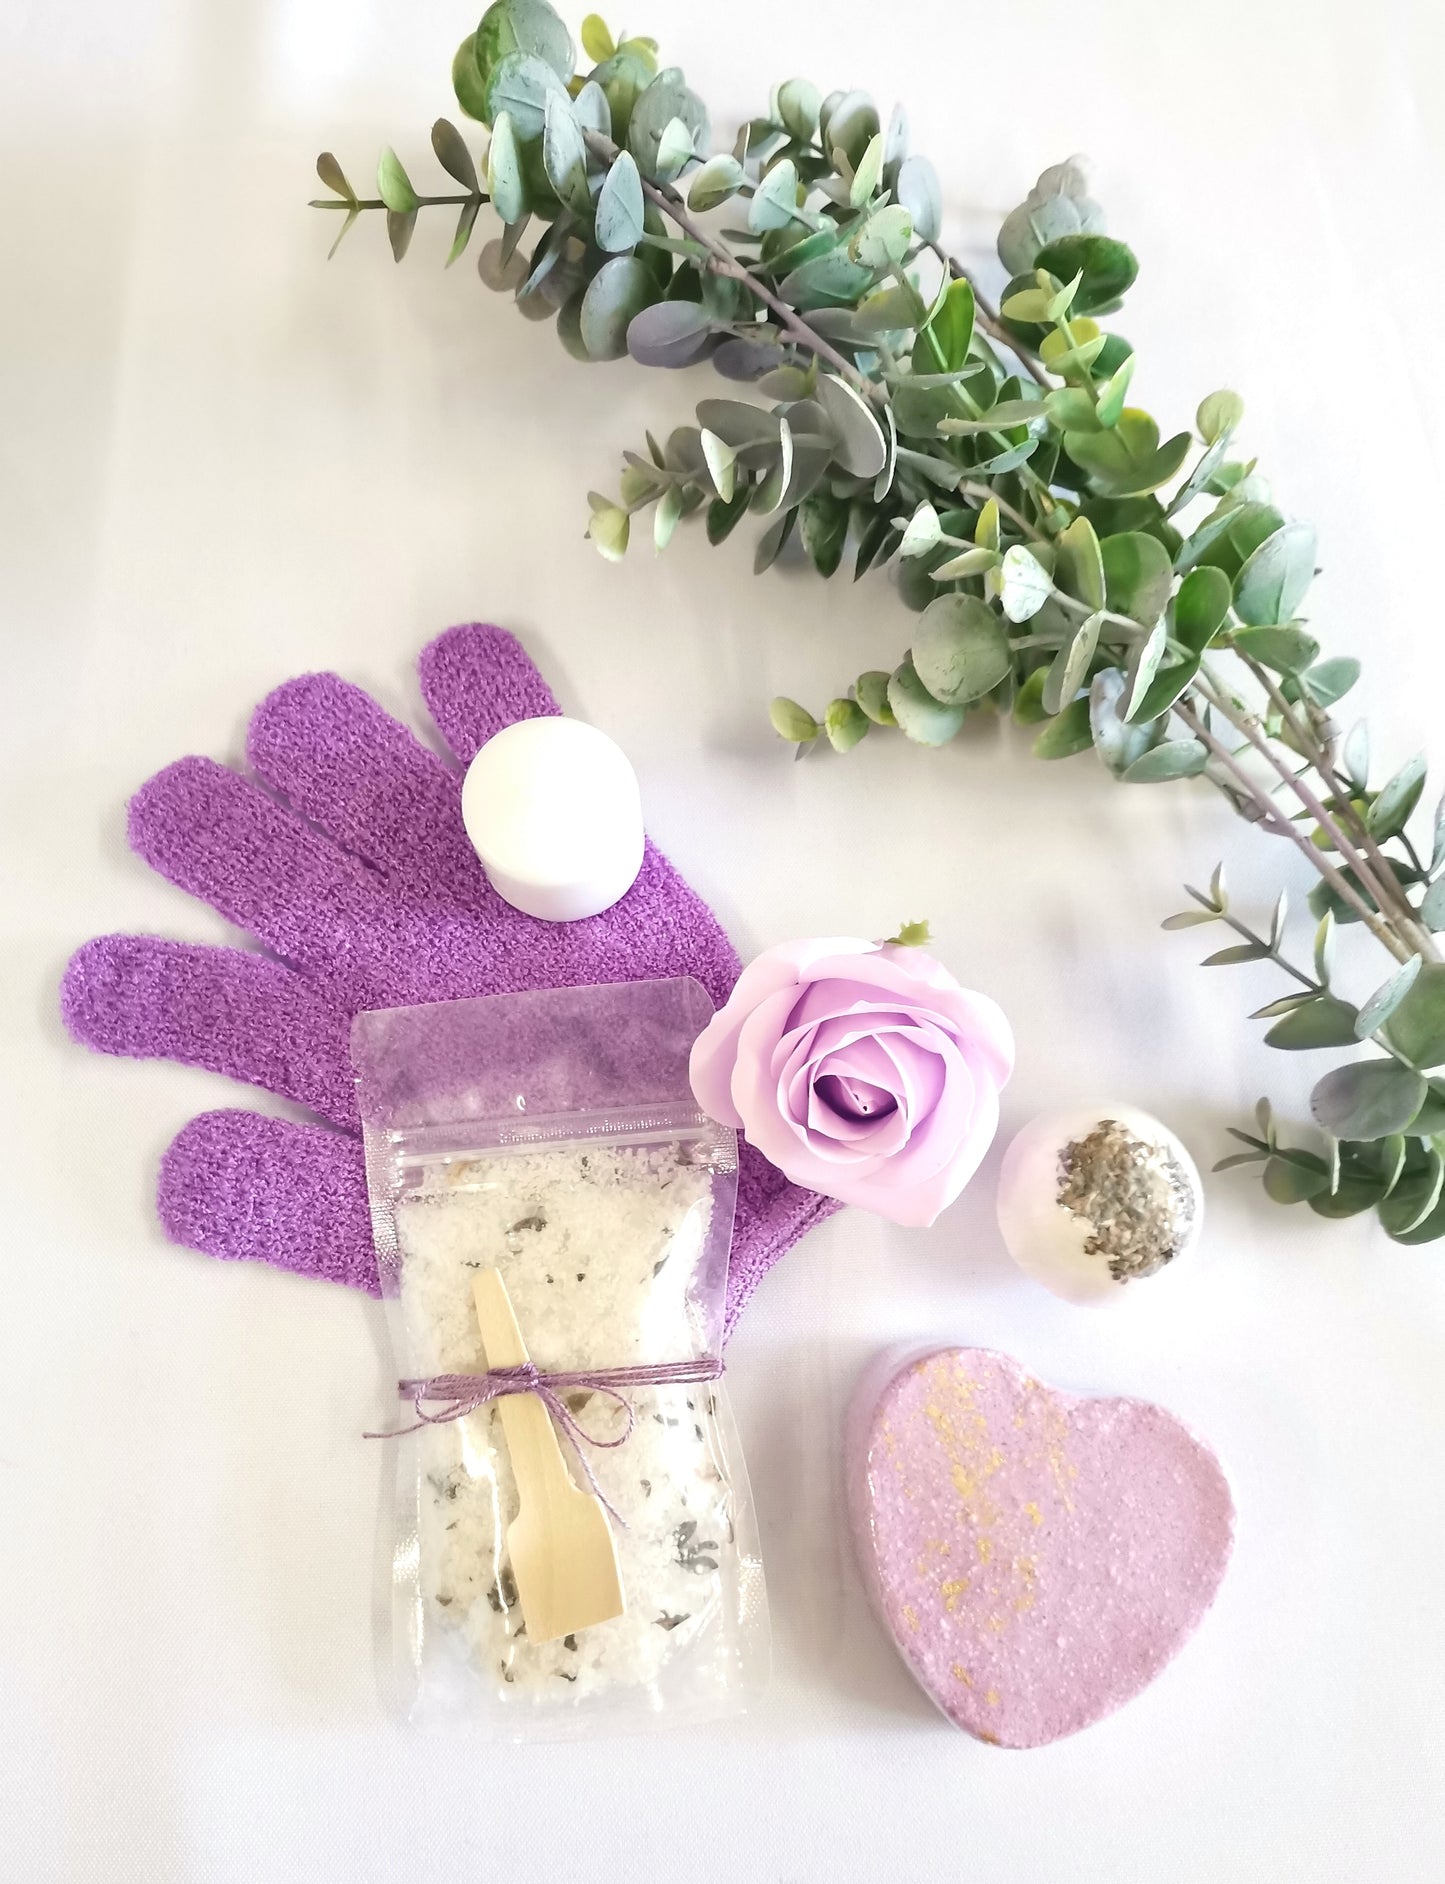 The Lavender Pamper Kit